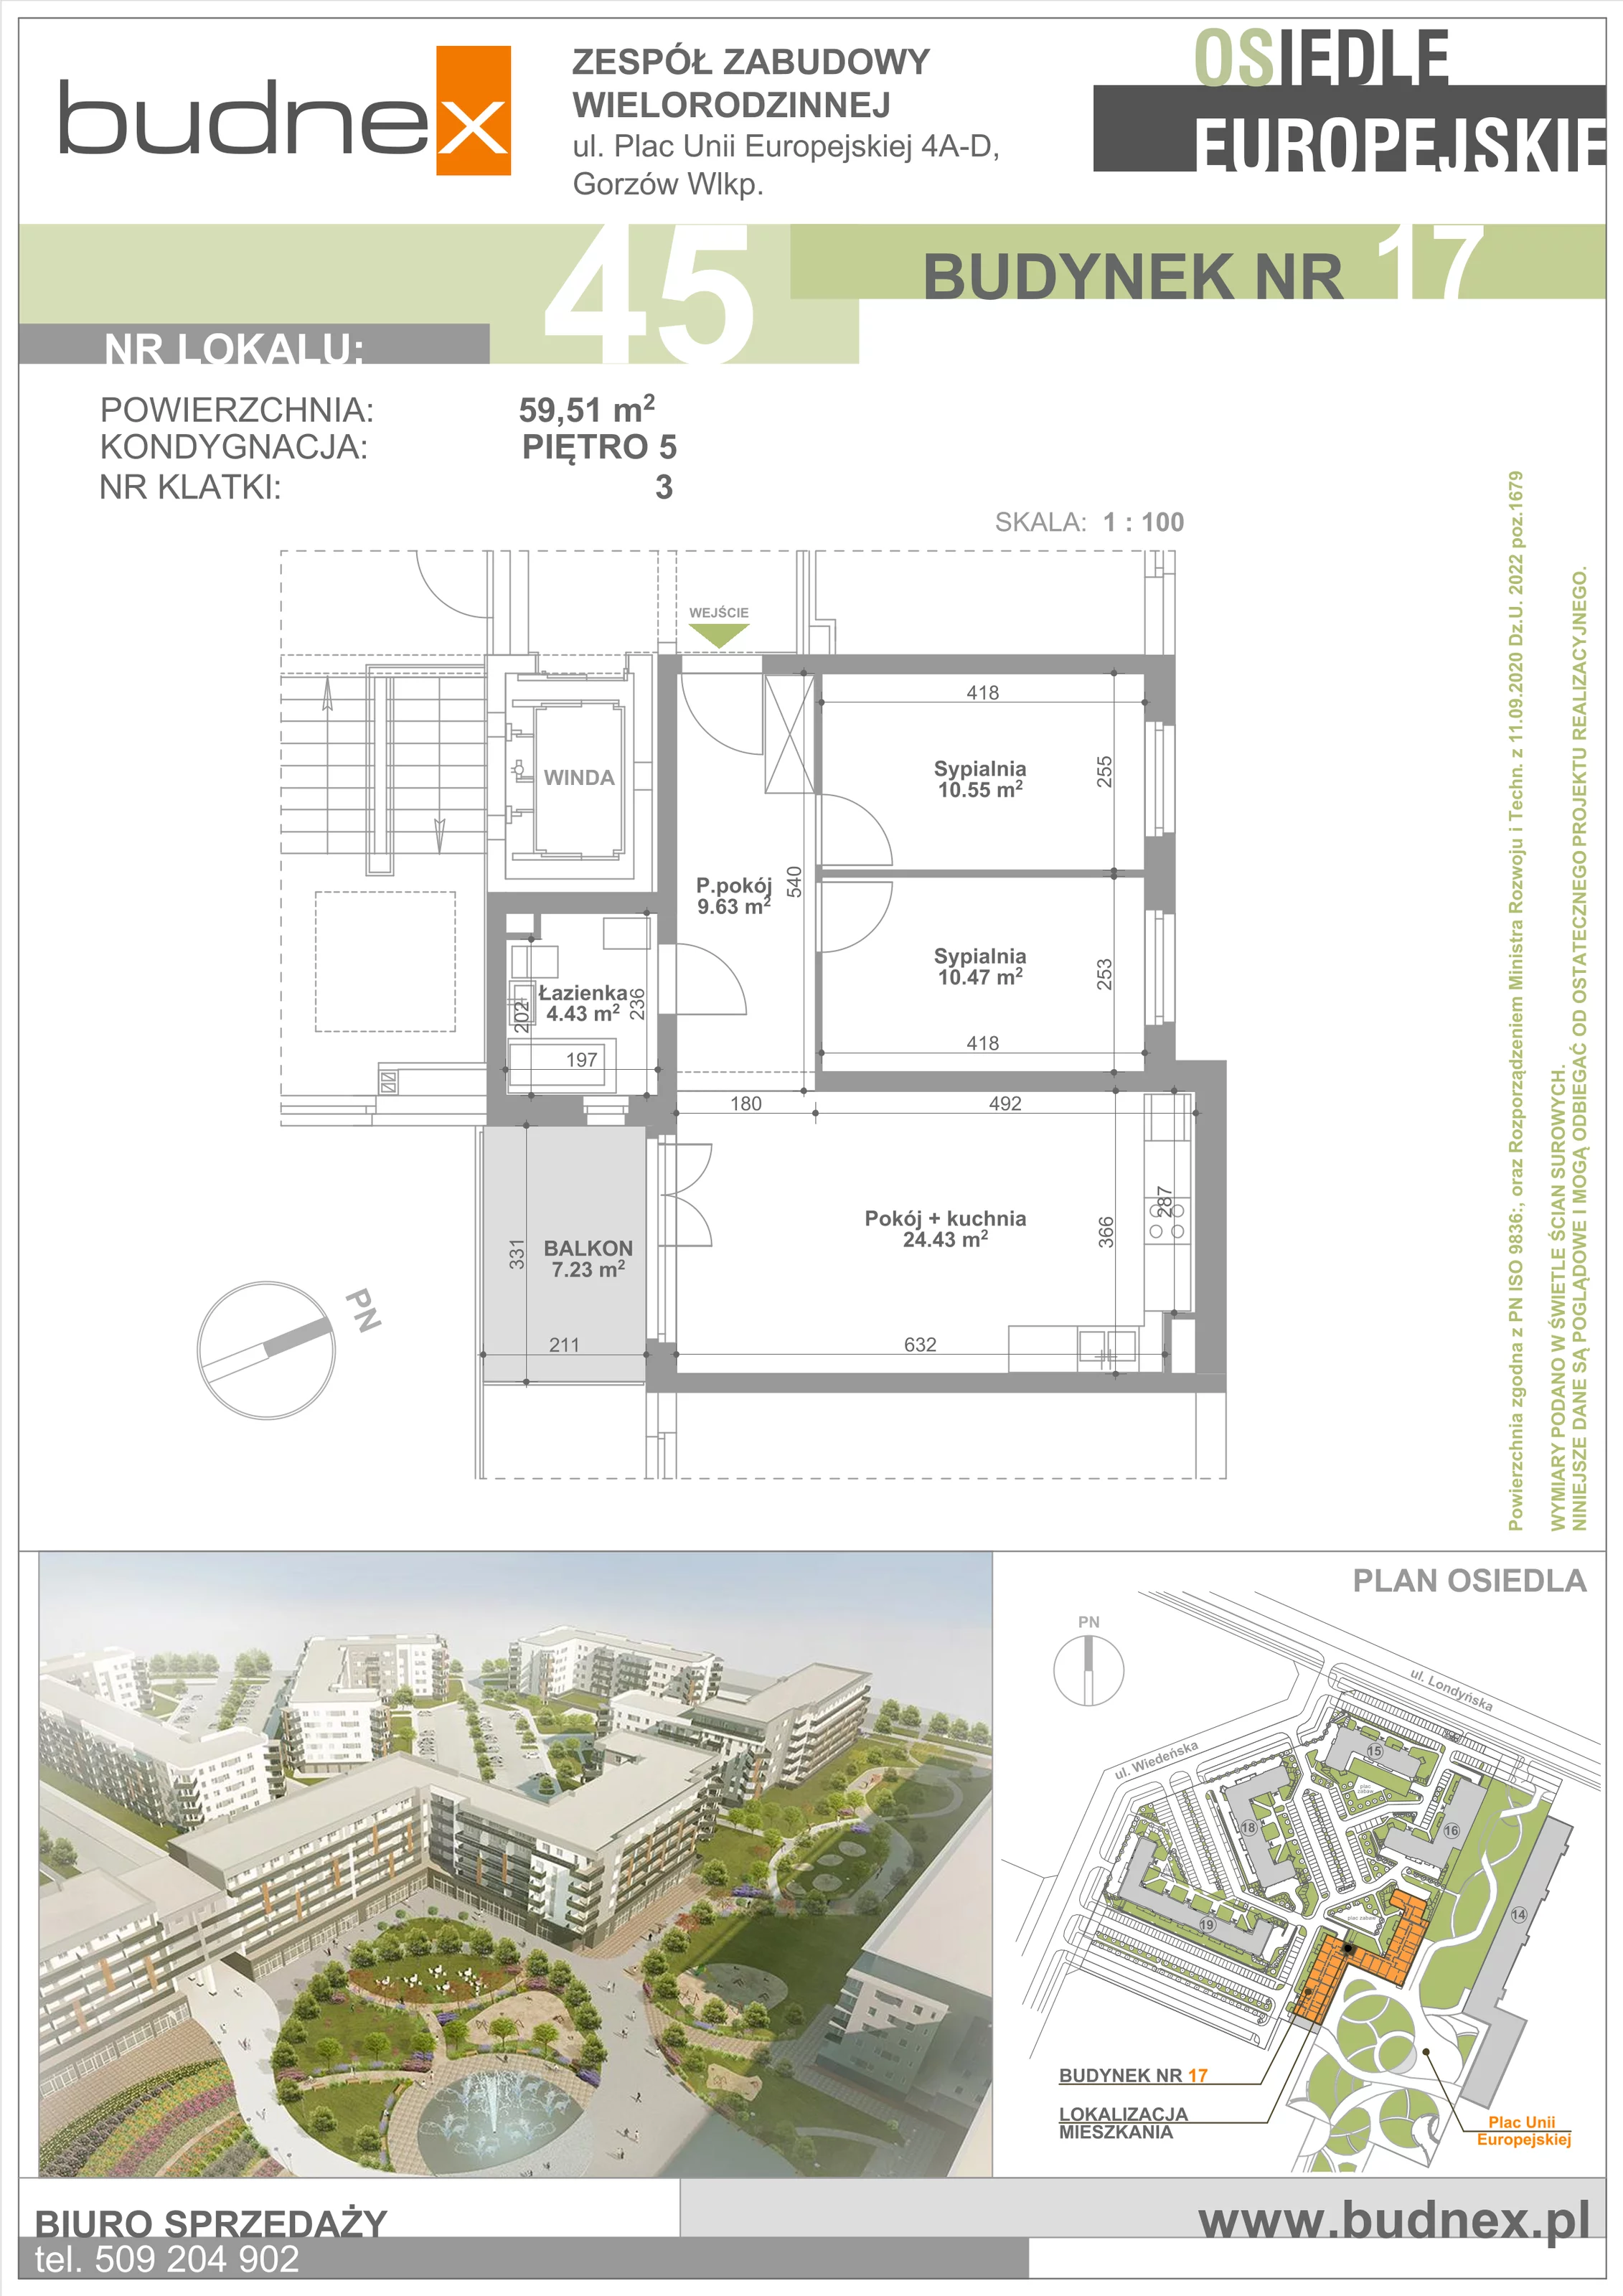 Mieszkanie 59,51 m², piętro 5, oferta nr 3/M45, Osiedle Europejskie - Budynek 17, Gorzów Wielkopolski, Plac Unii Europejskiej 4A-D